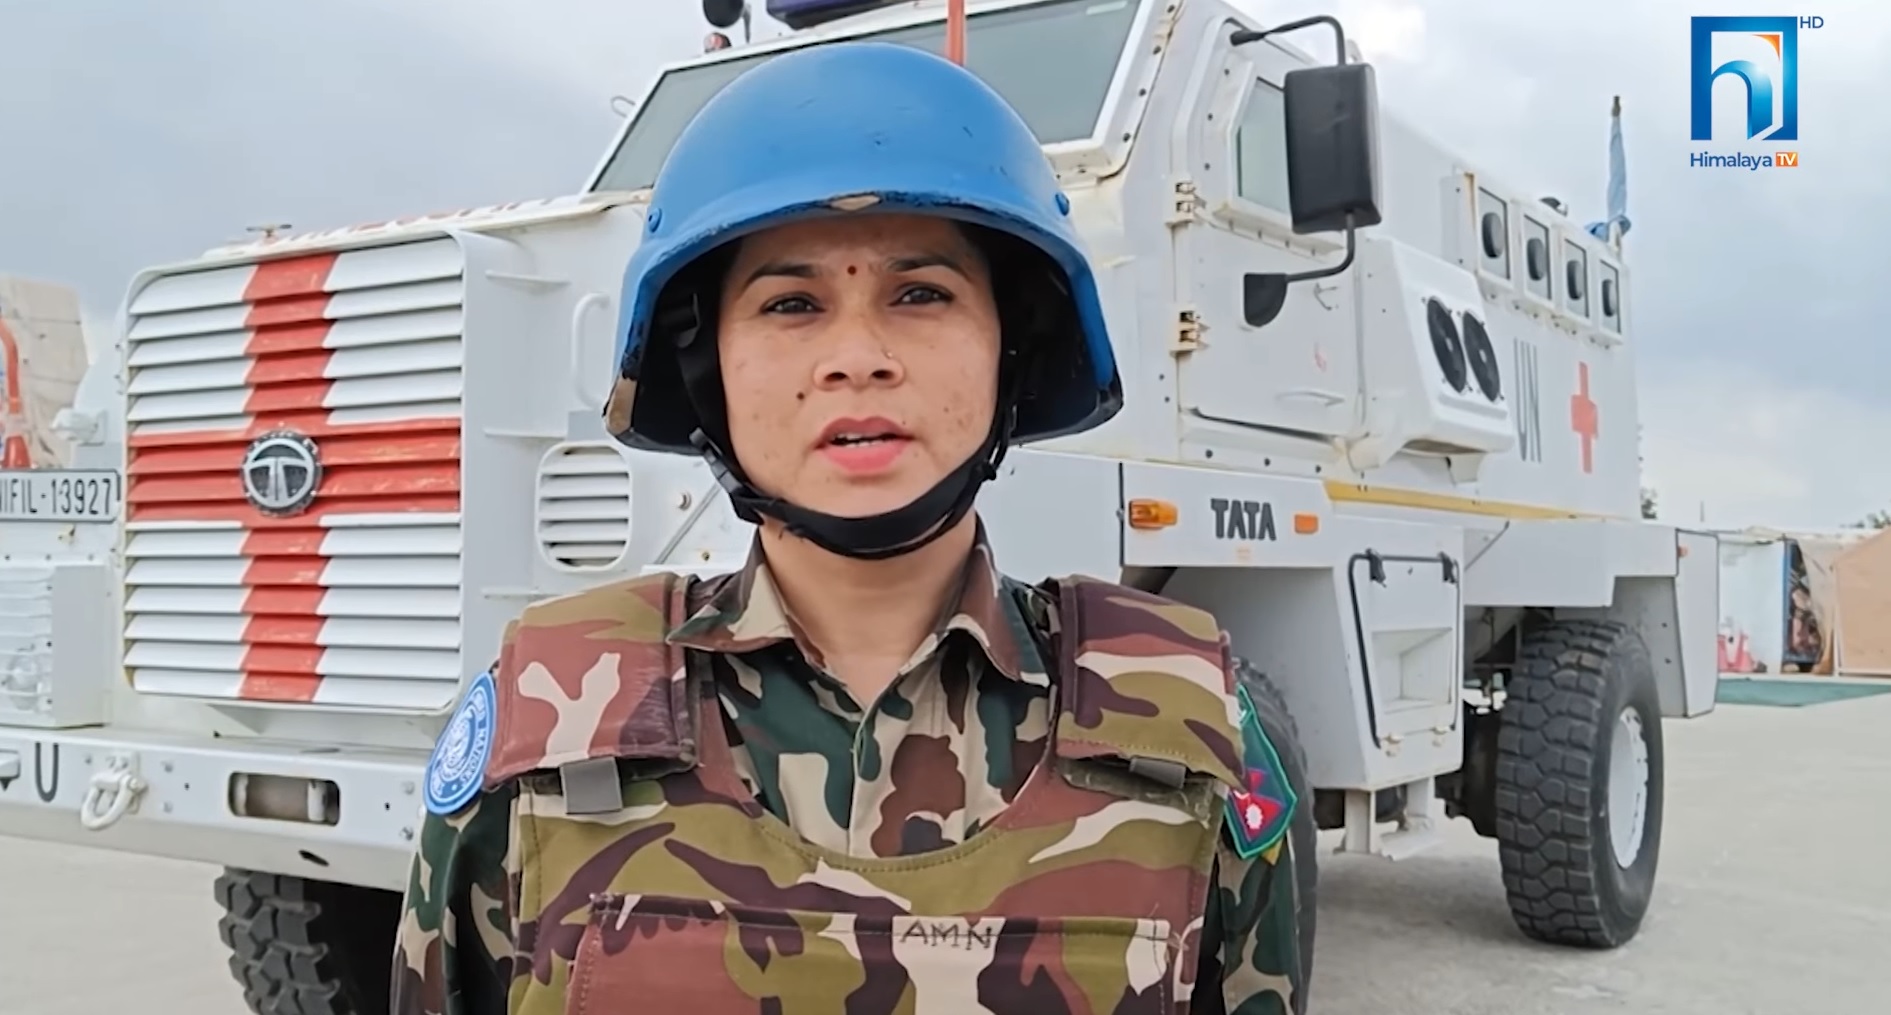 लेबननमा नेपाली महिला सैनिक : शान्ति स्थापनाका लागि महत्वपूर्ण भूमिका निर्वाह (भिडियो रिपोर्टसहित)